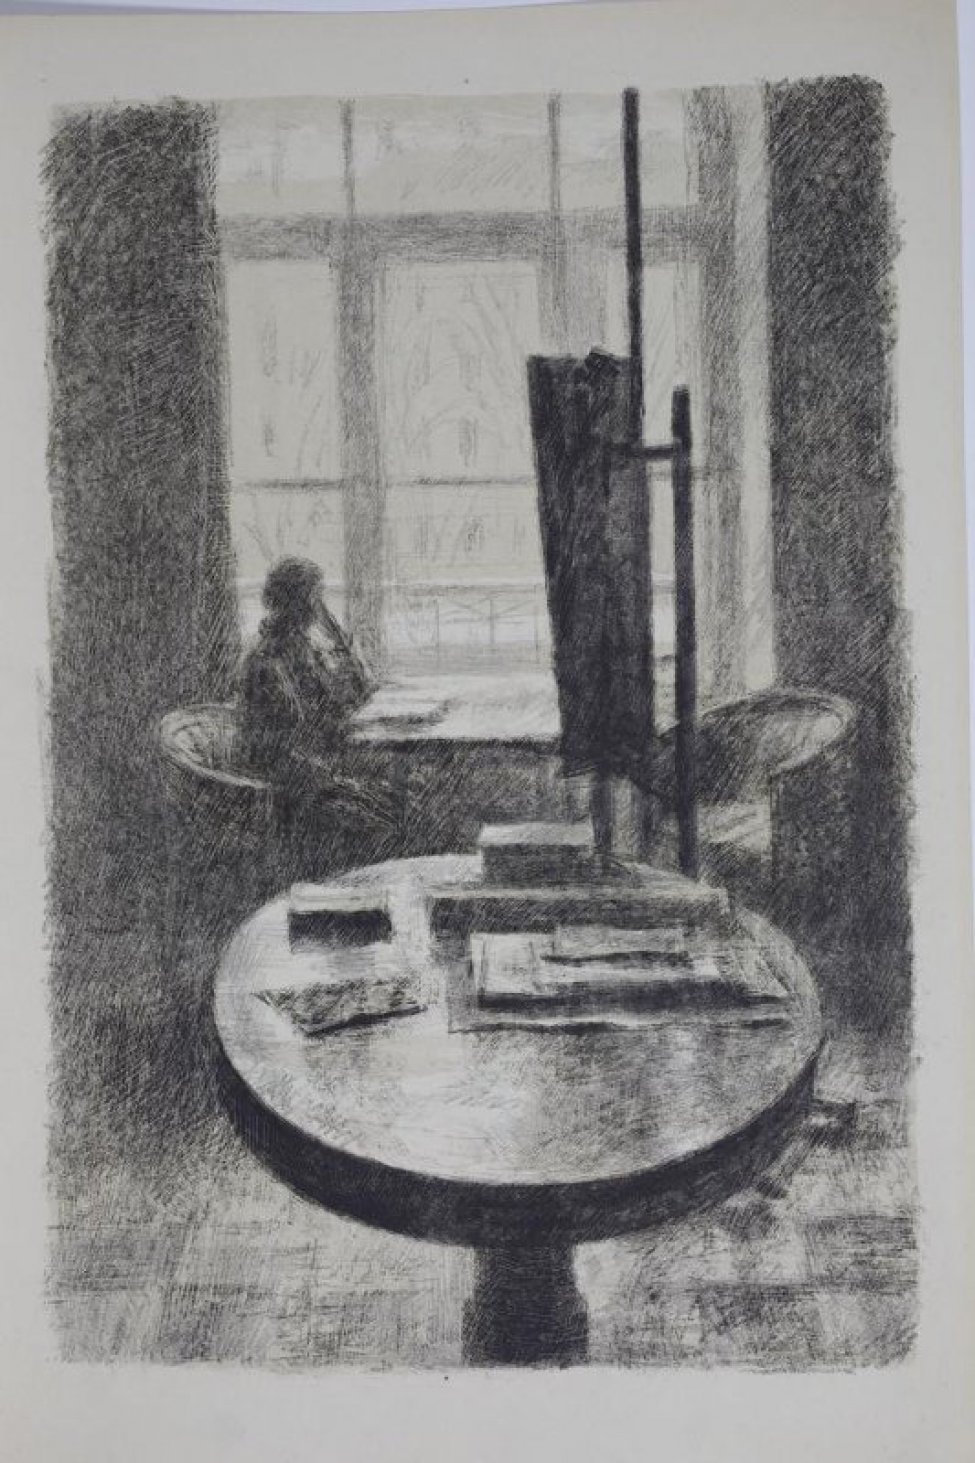 Изображена часть комнаты с окном. На переднем плане круглый стол, на столе книги, листы бумаги. На втором плане справа мольберт и кресло. На третьем плане у окна силуэт женщины, сидящей в кресле у прямоугольного стола.